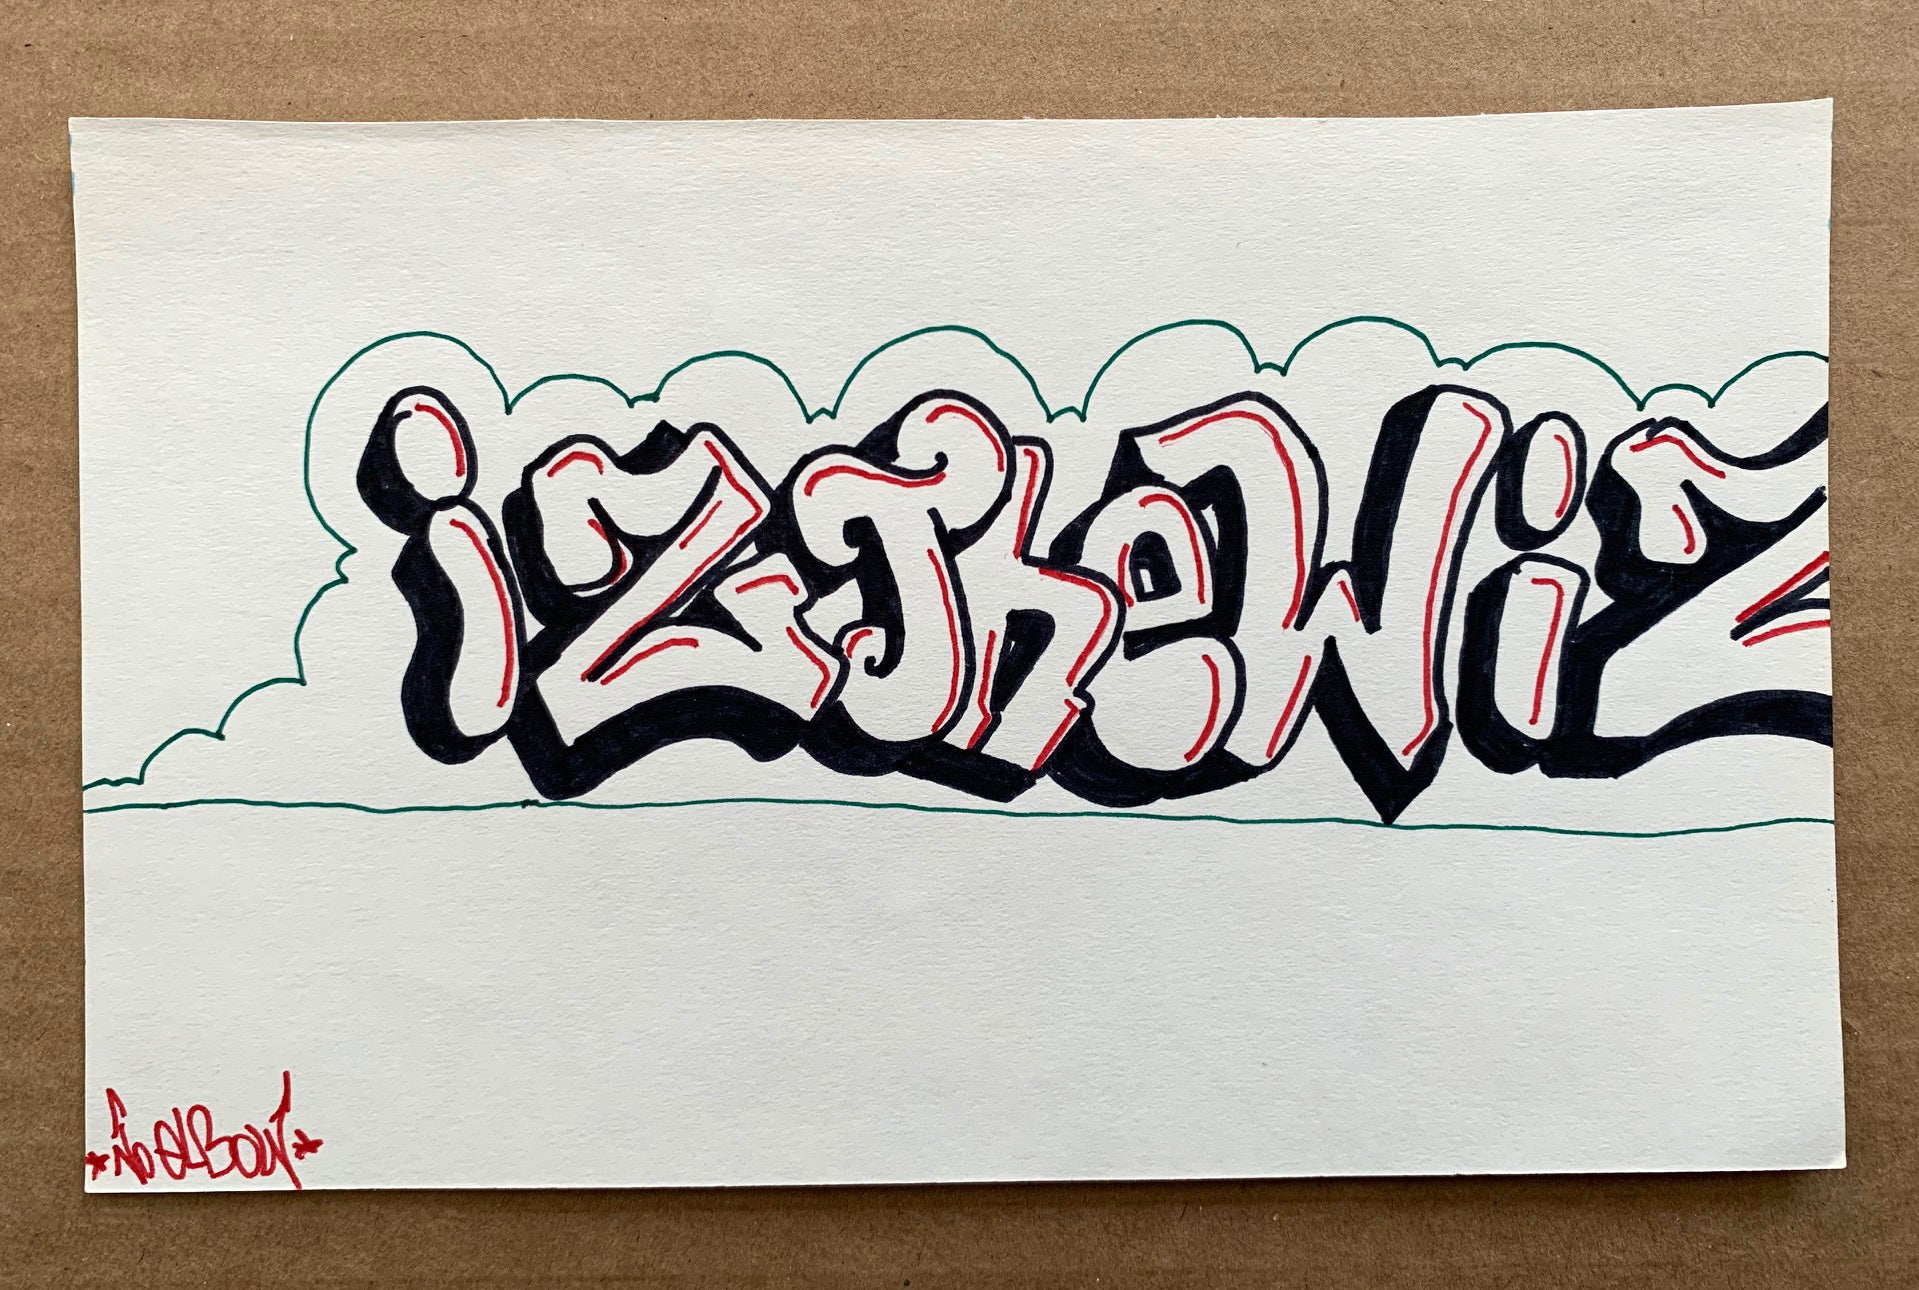 IZ THE WIZ - "IZ THE WIZ" Drawing